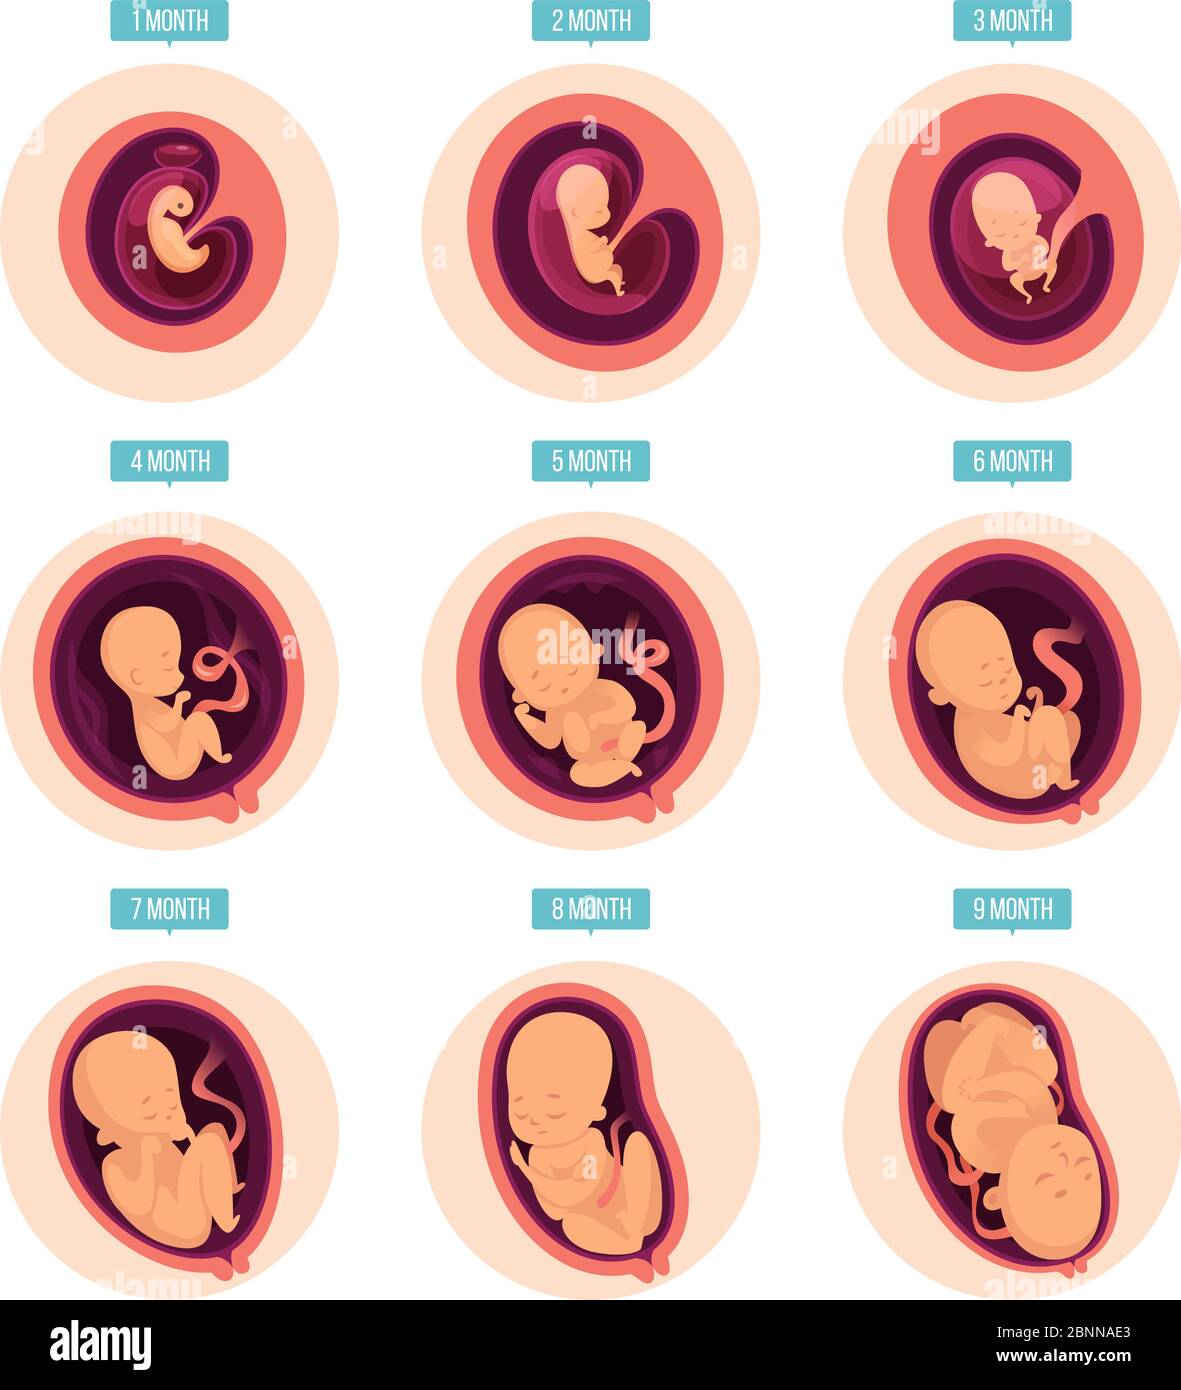 Fasi di gravidanza. Stadi di crescita umana sviluppo embrionale fertilità delle uova fasi di gravidanza immagini vettoriali infografiche Illustrazione Vettoriale